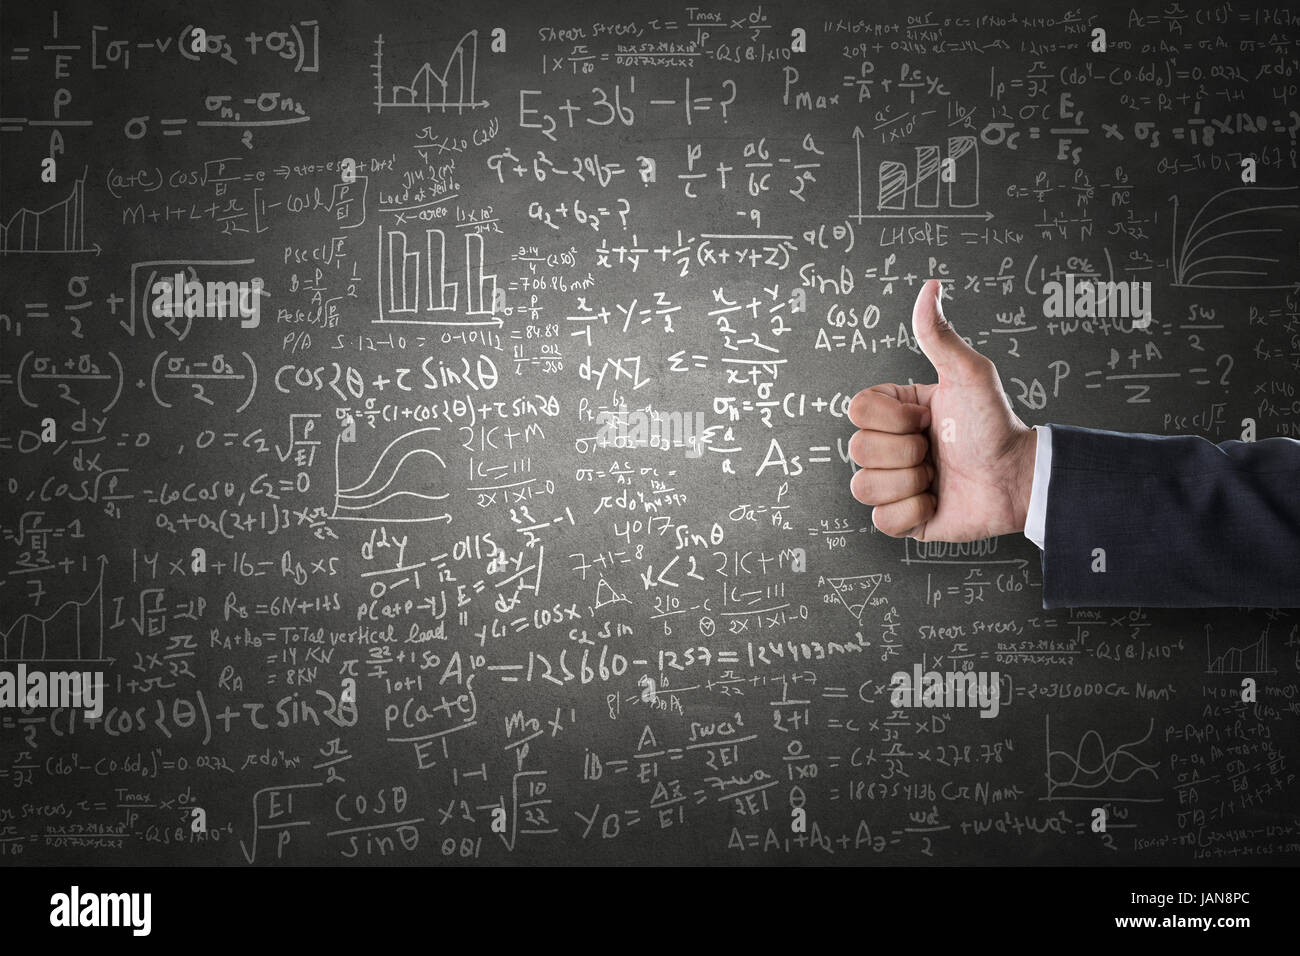 Les femmes part Thumbs up sign in front de formules mathématiques tirés sur tableau noir Banque D'Images